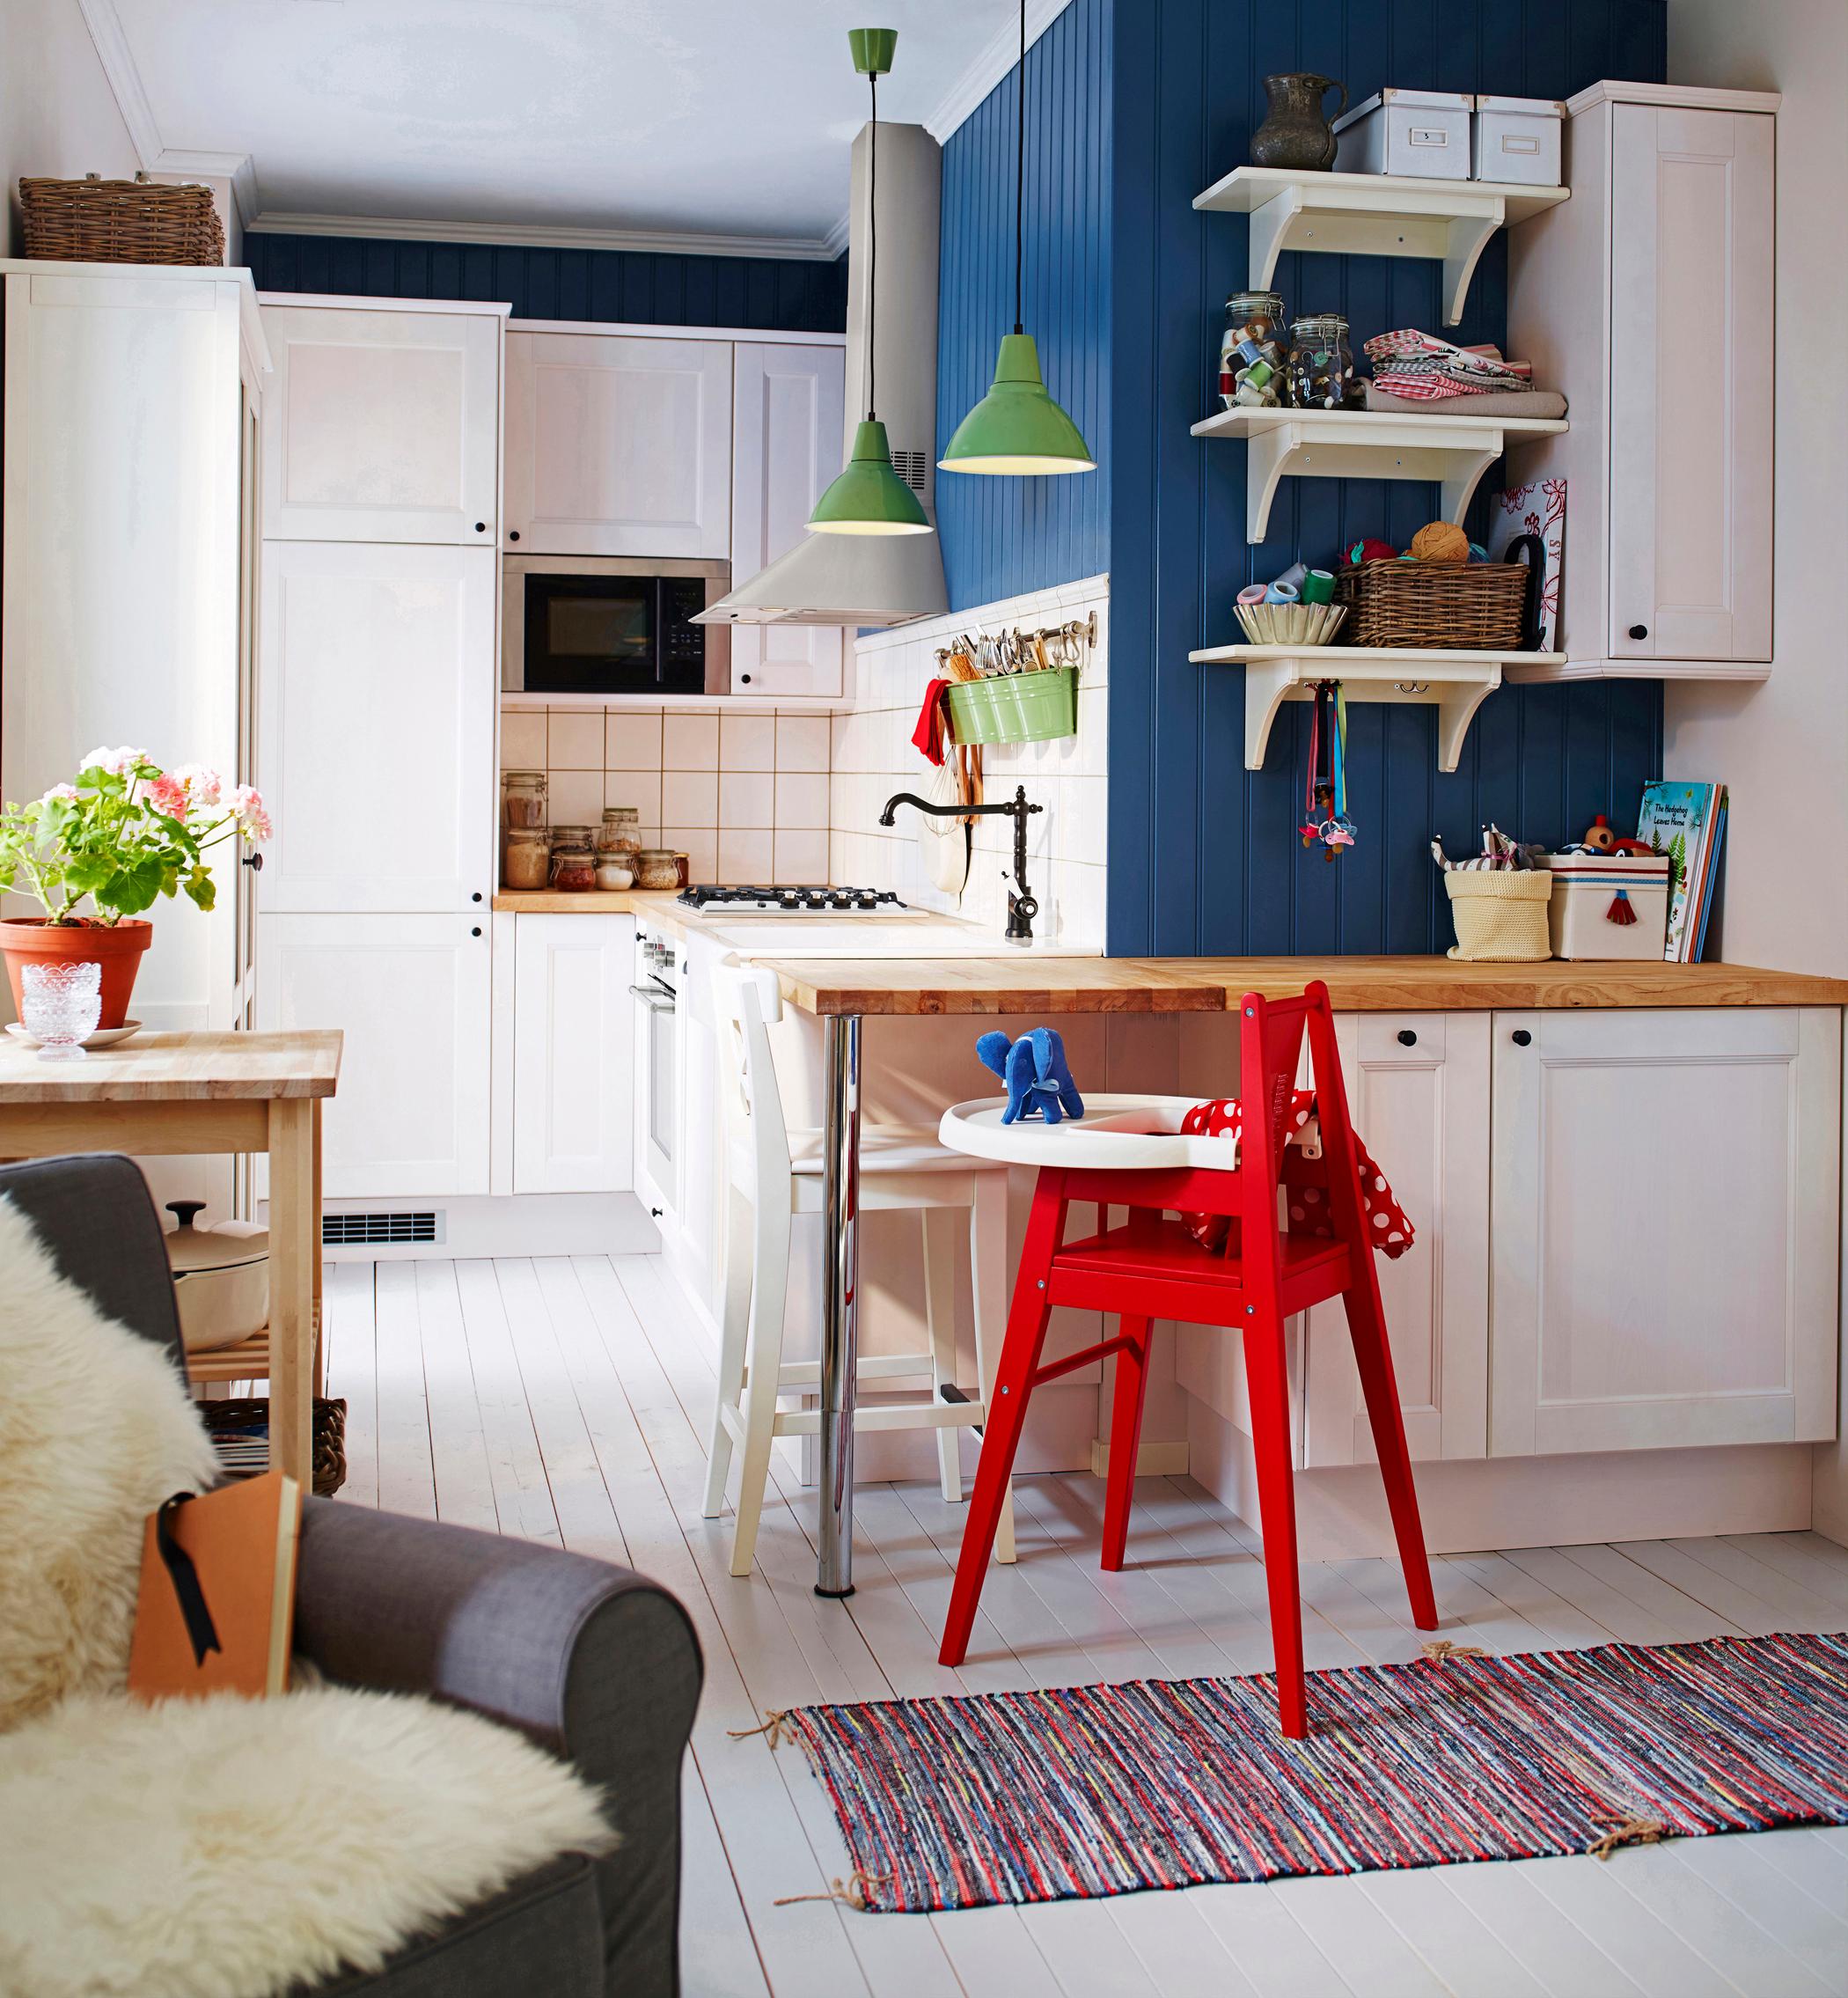 Charmante Wohnküche für die ganze Familie #küche #wohnküche #teppich #sessel #ikea #bunterteppich #küchenschrank #lampe #tisch ©Inter IKEA Systems B.V.